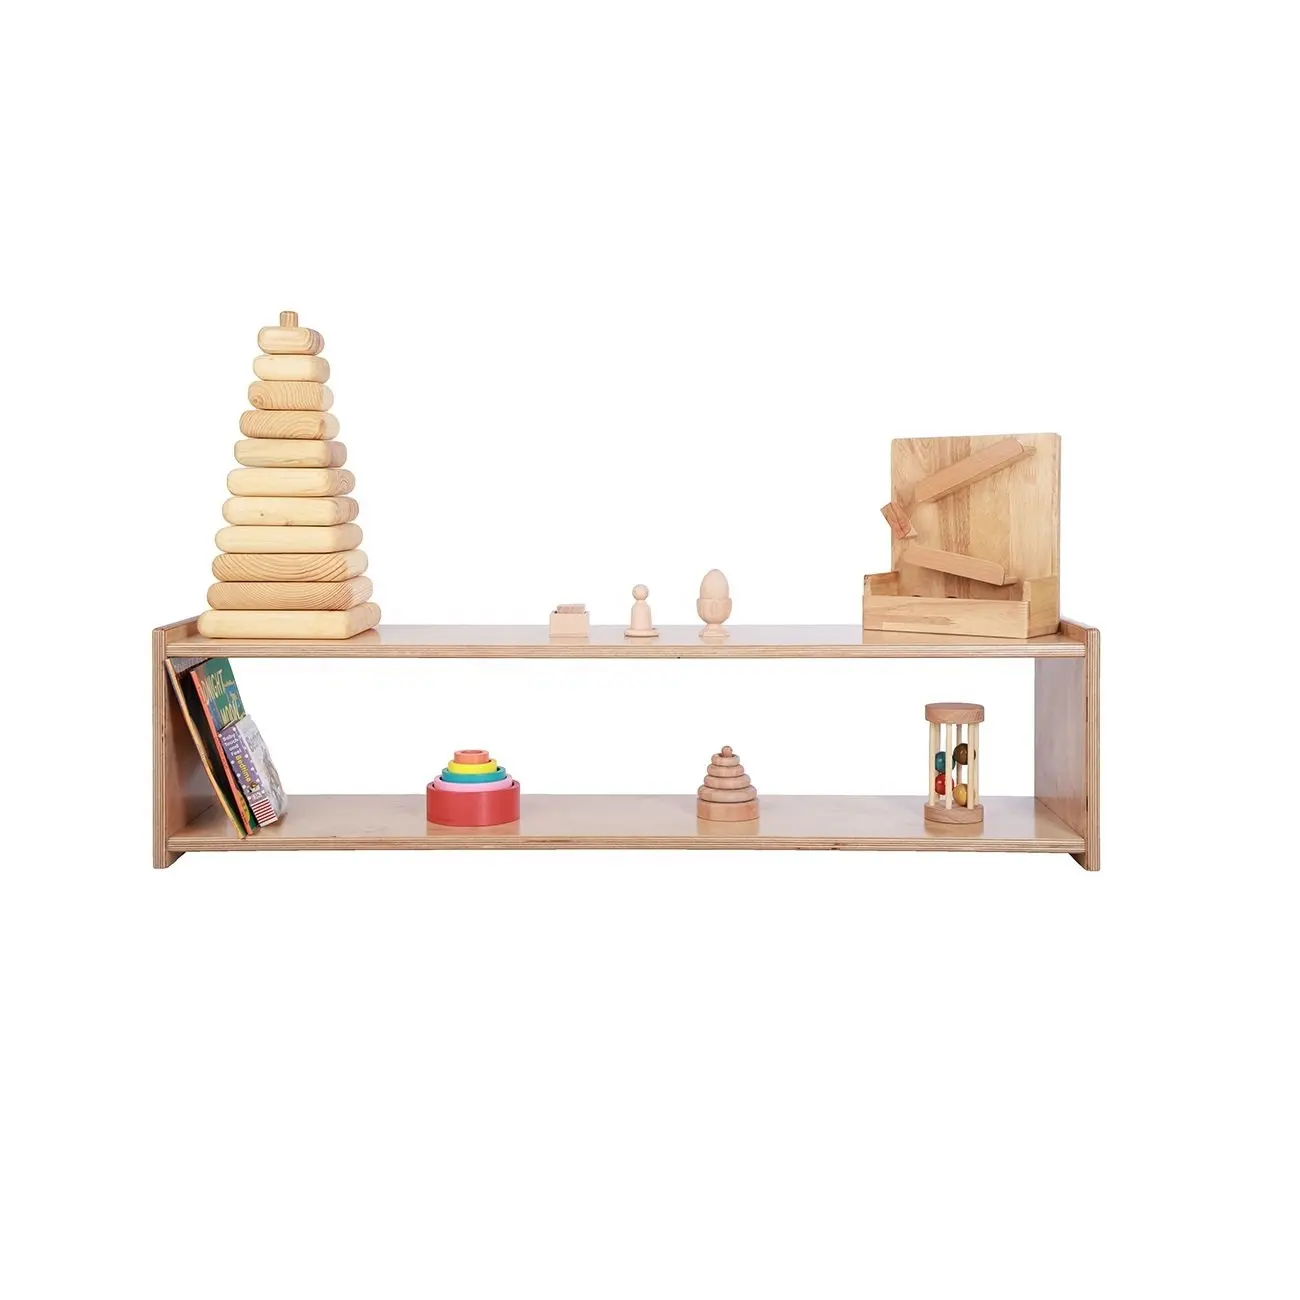 Scaffale di legno dei bambini della mobilia dell'aula dell'asilo prescolare per i giocattoli che mostrano lo scaffale di legno prescolare